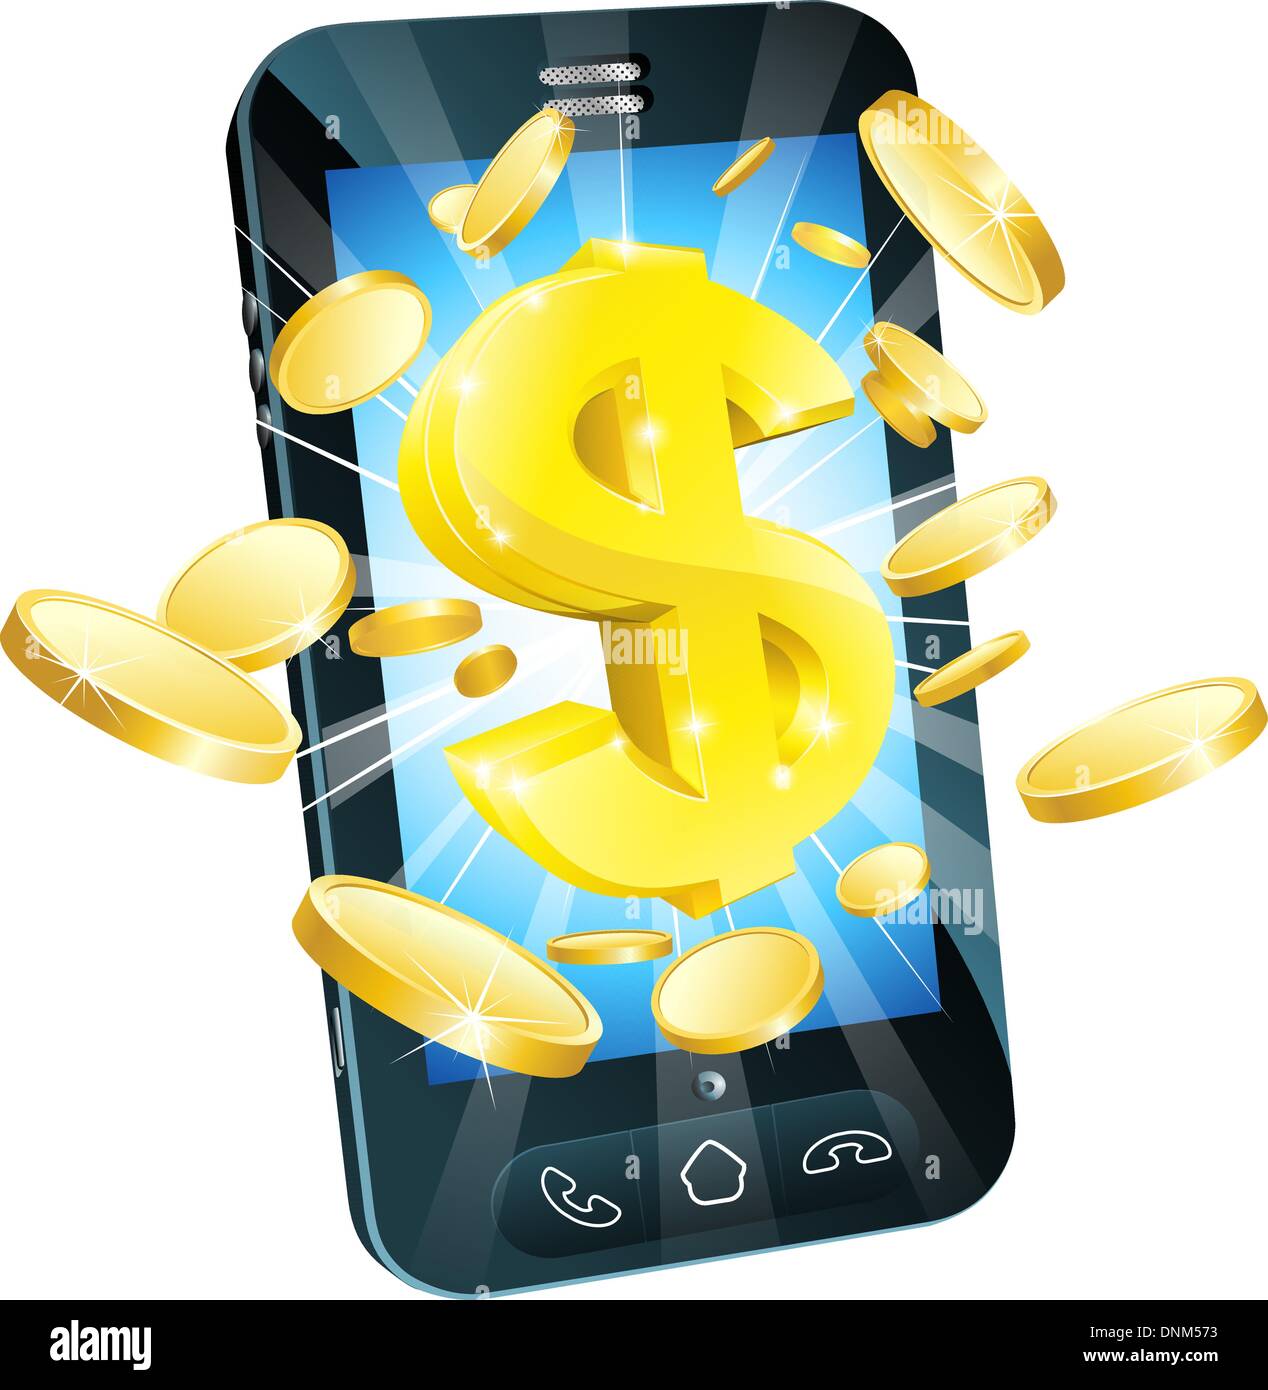 Dollar Geld Handy Konzept Illustration des Handy mit Münzen und gold dollar Stock Vektor